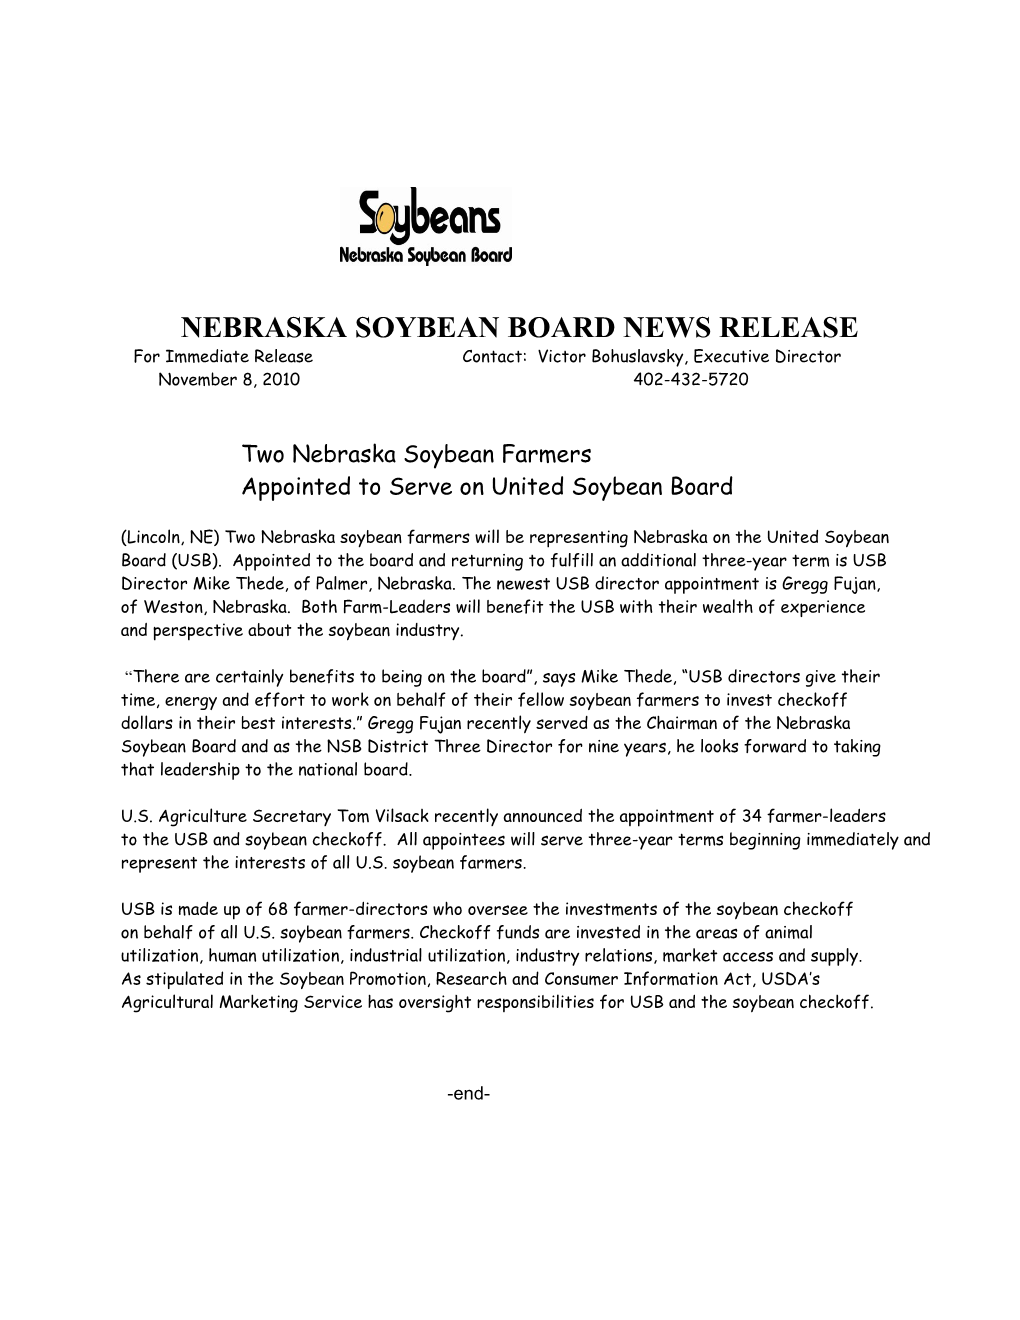 Nebraska Soybean Board News Release